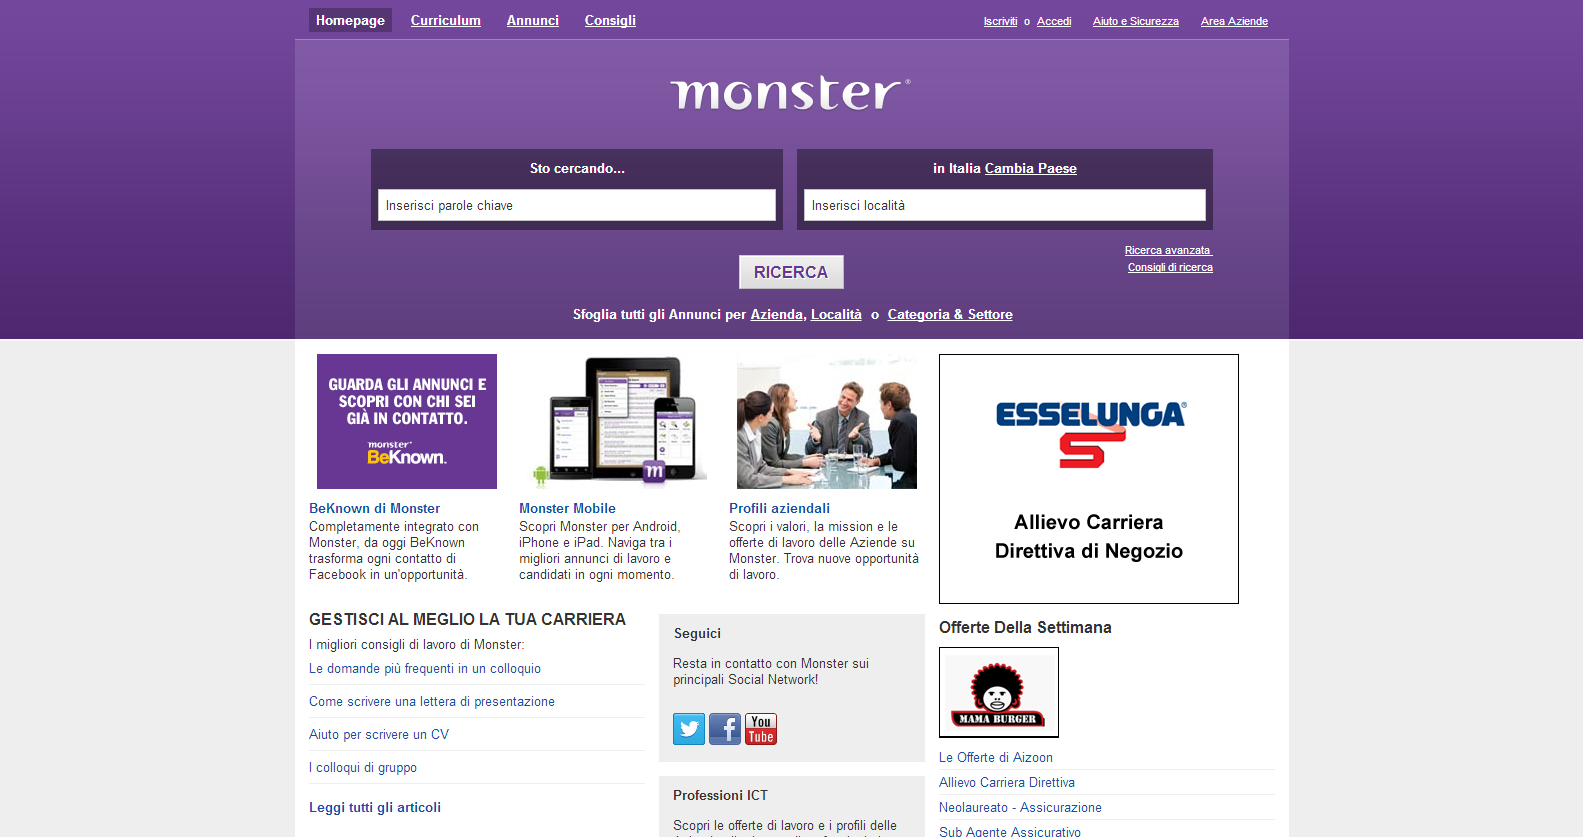 Schermata principale del portale monster.com